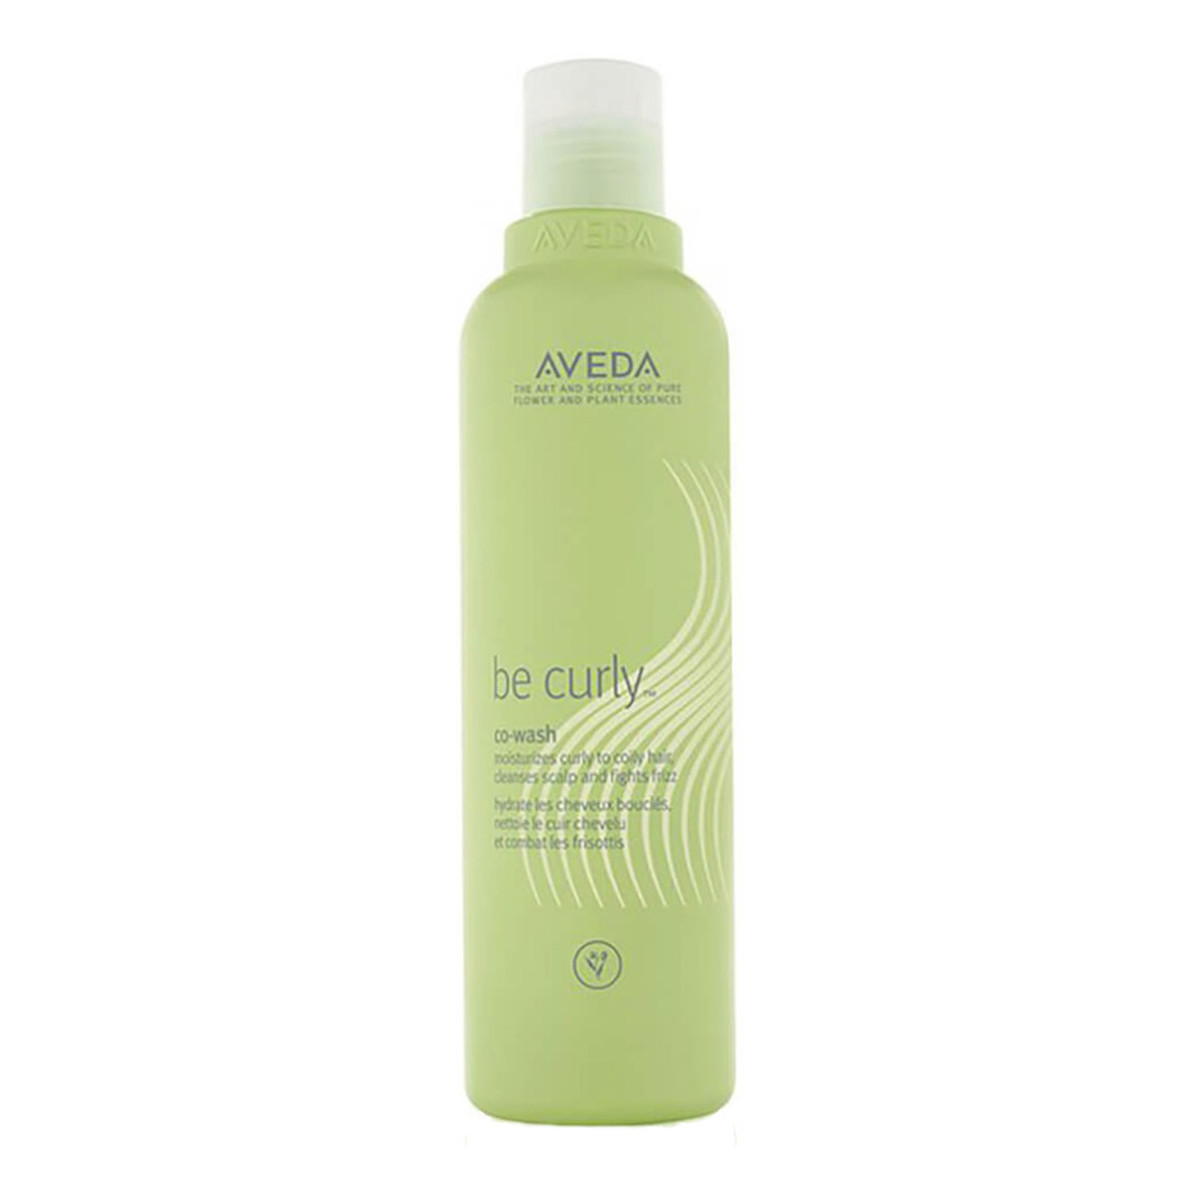 Aveda Be Curly Co-Wash Shampoo szampon nawilżający do włosów kręconych 250ml